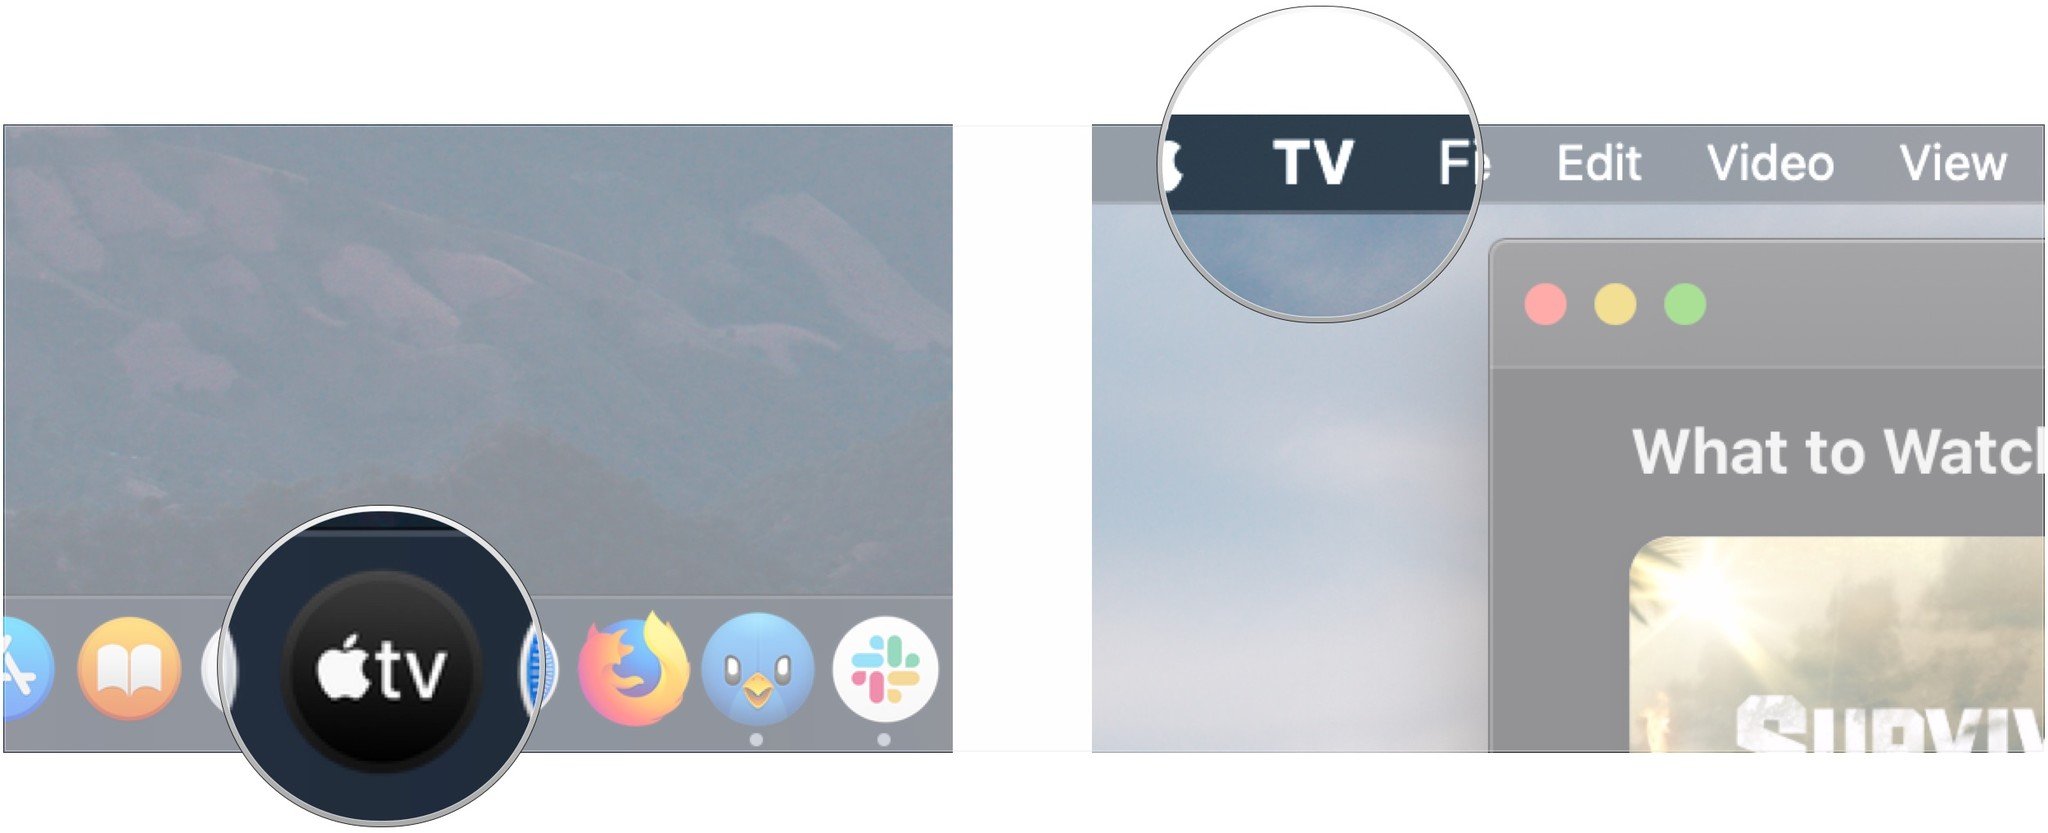 Open TV app, click TV in menu bar